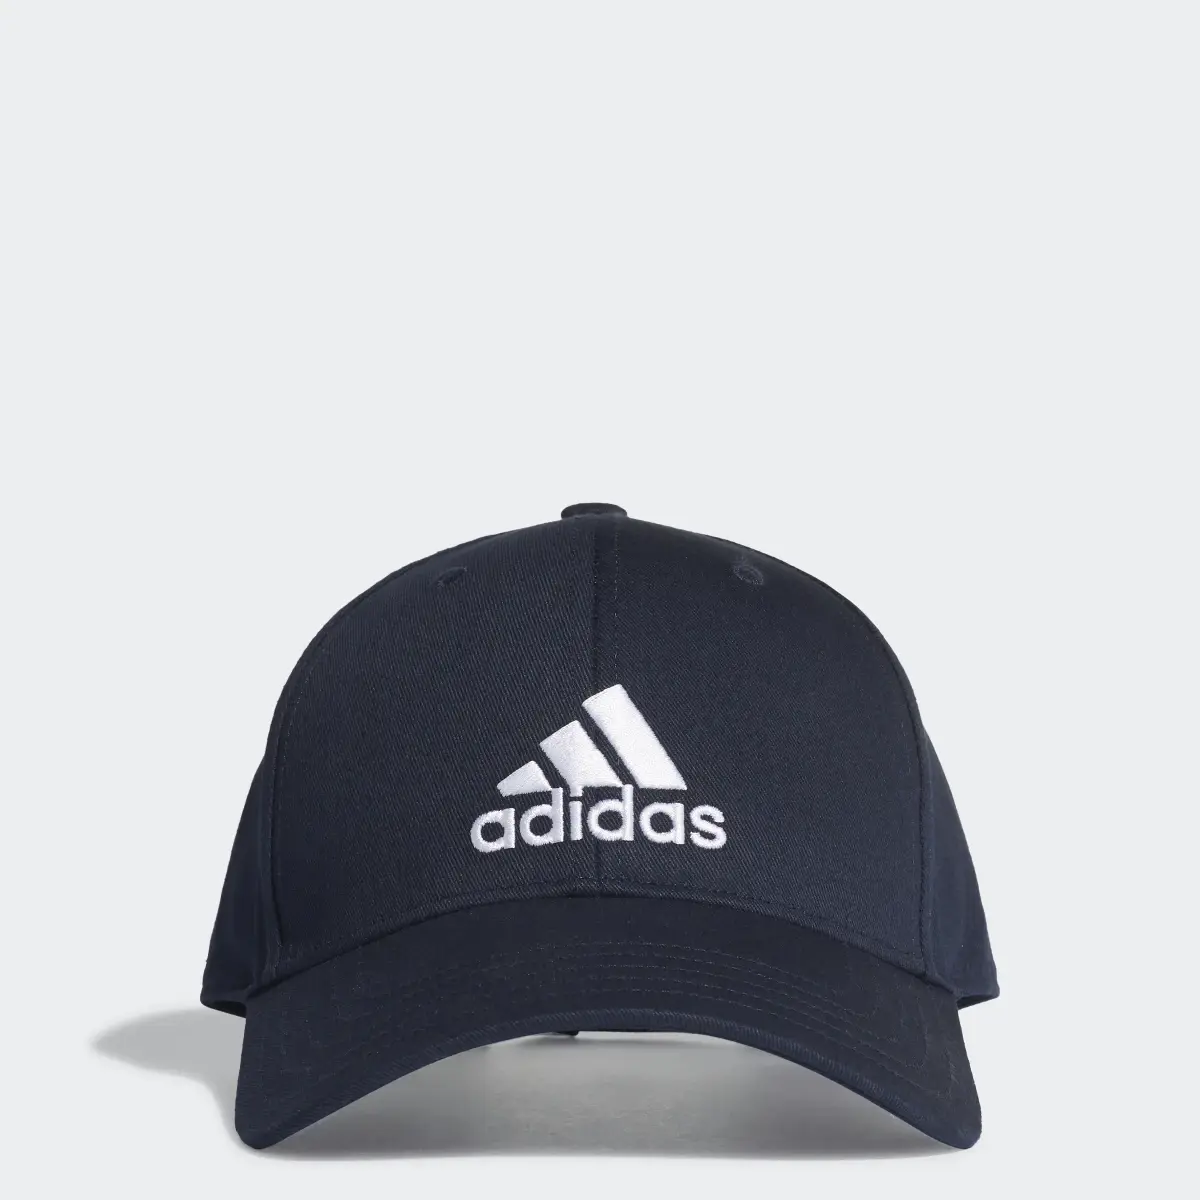 Adidas COTTON BASEBALL CAP. 1